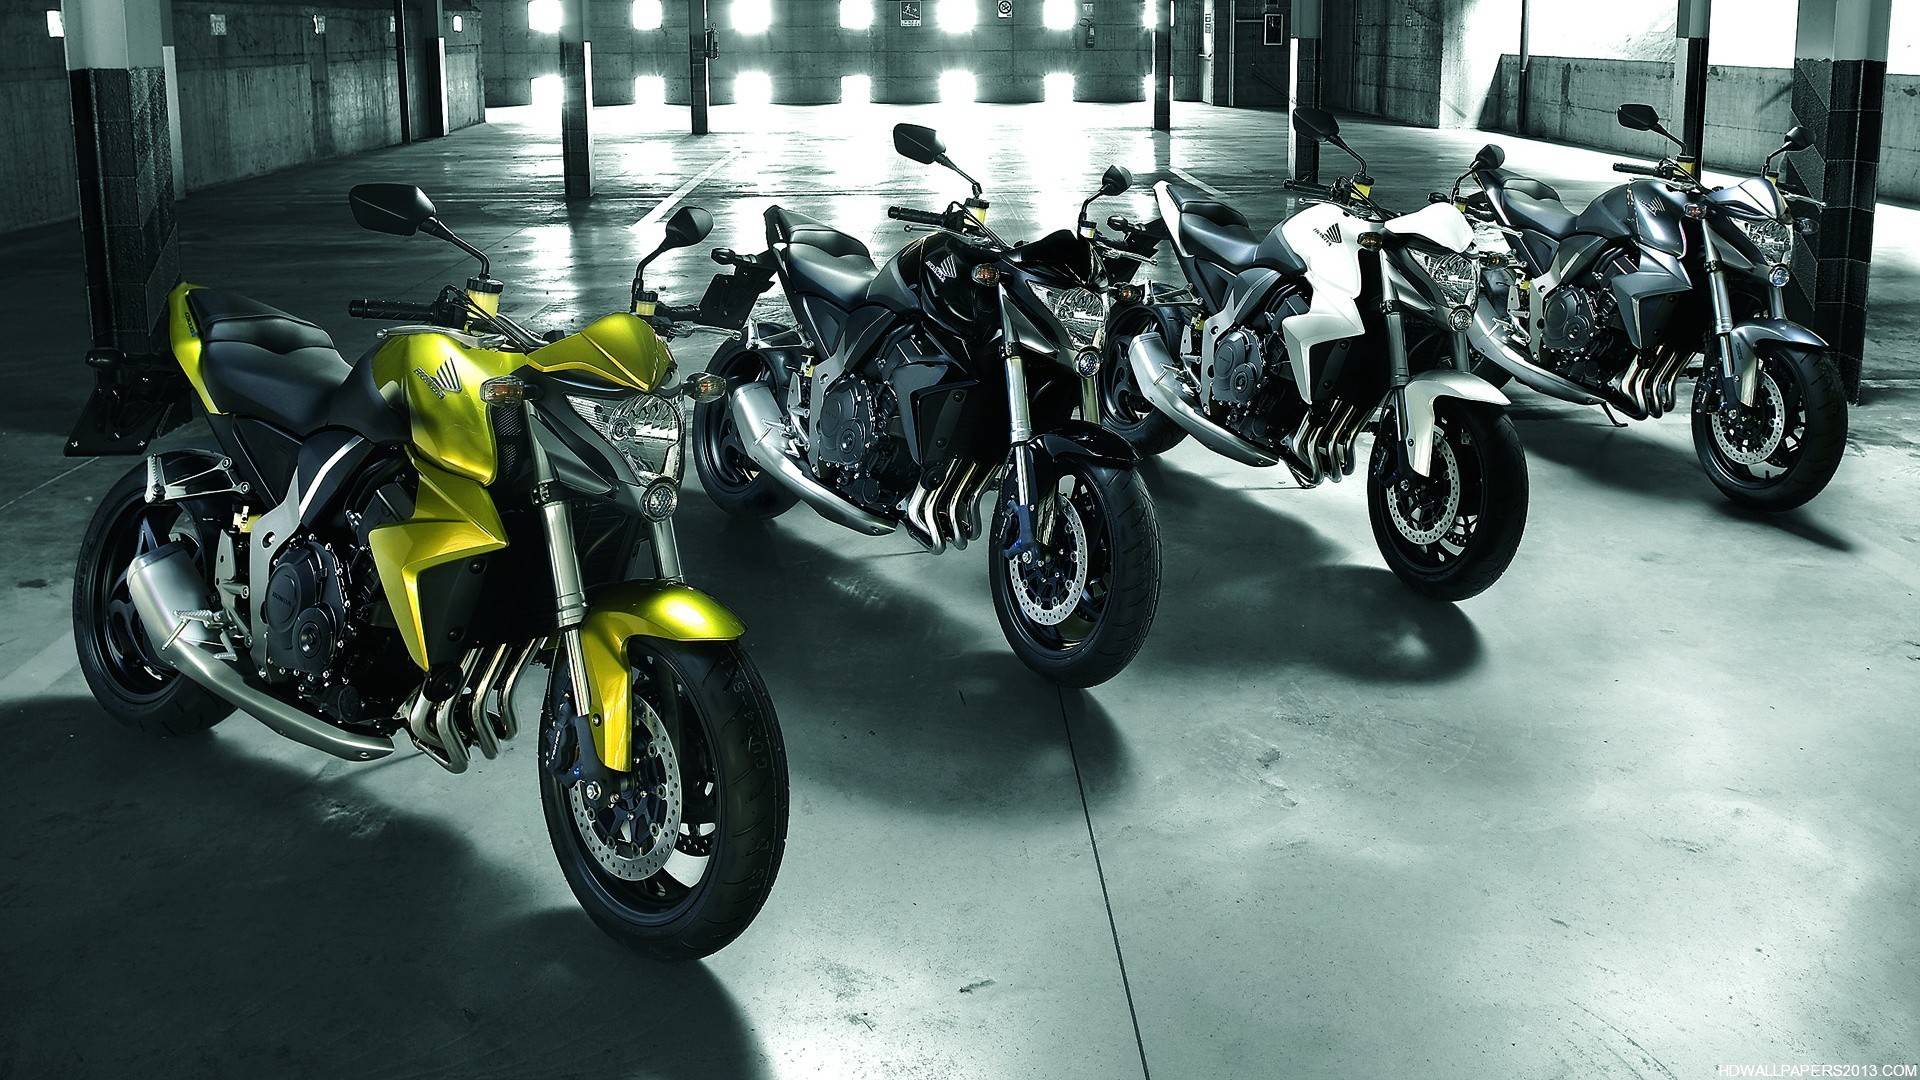 Honda Motorcycle Wallpaper HD Android Application